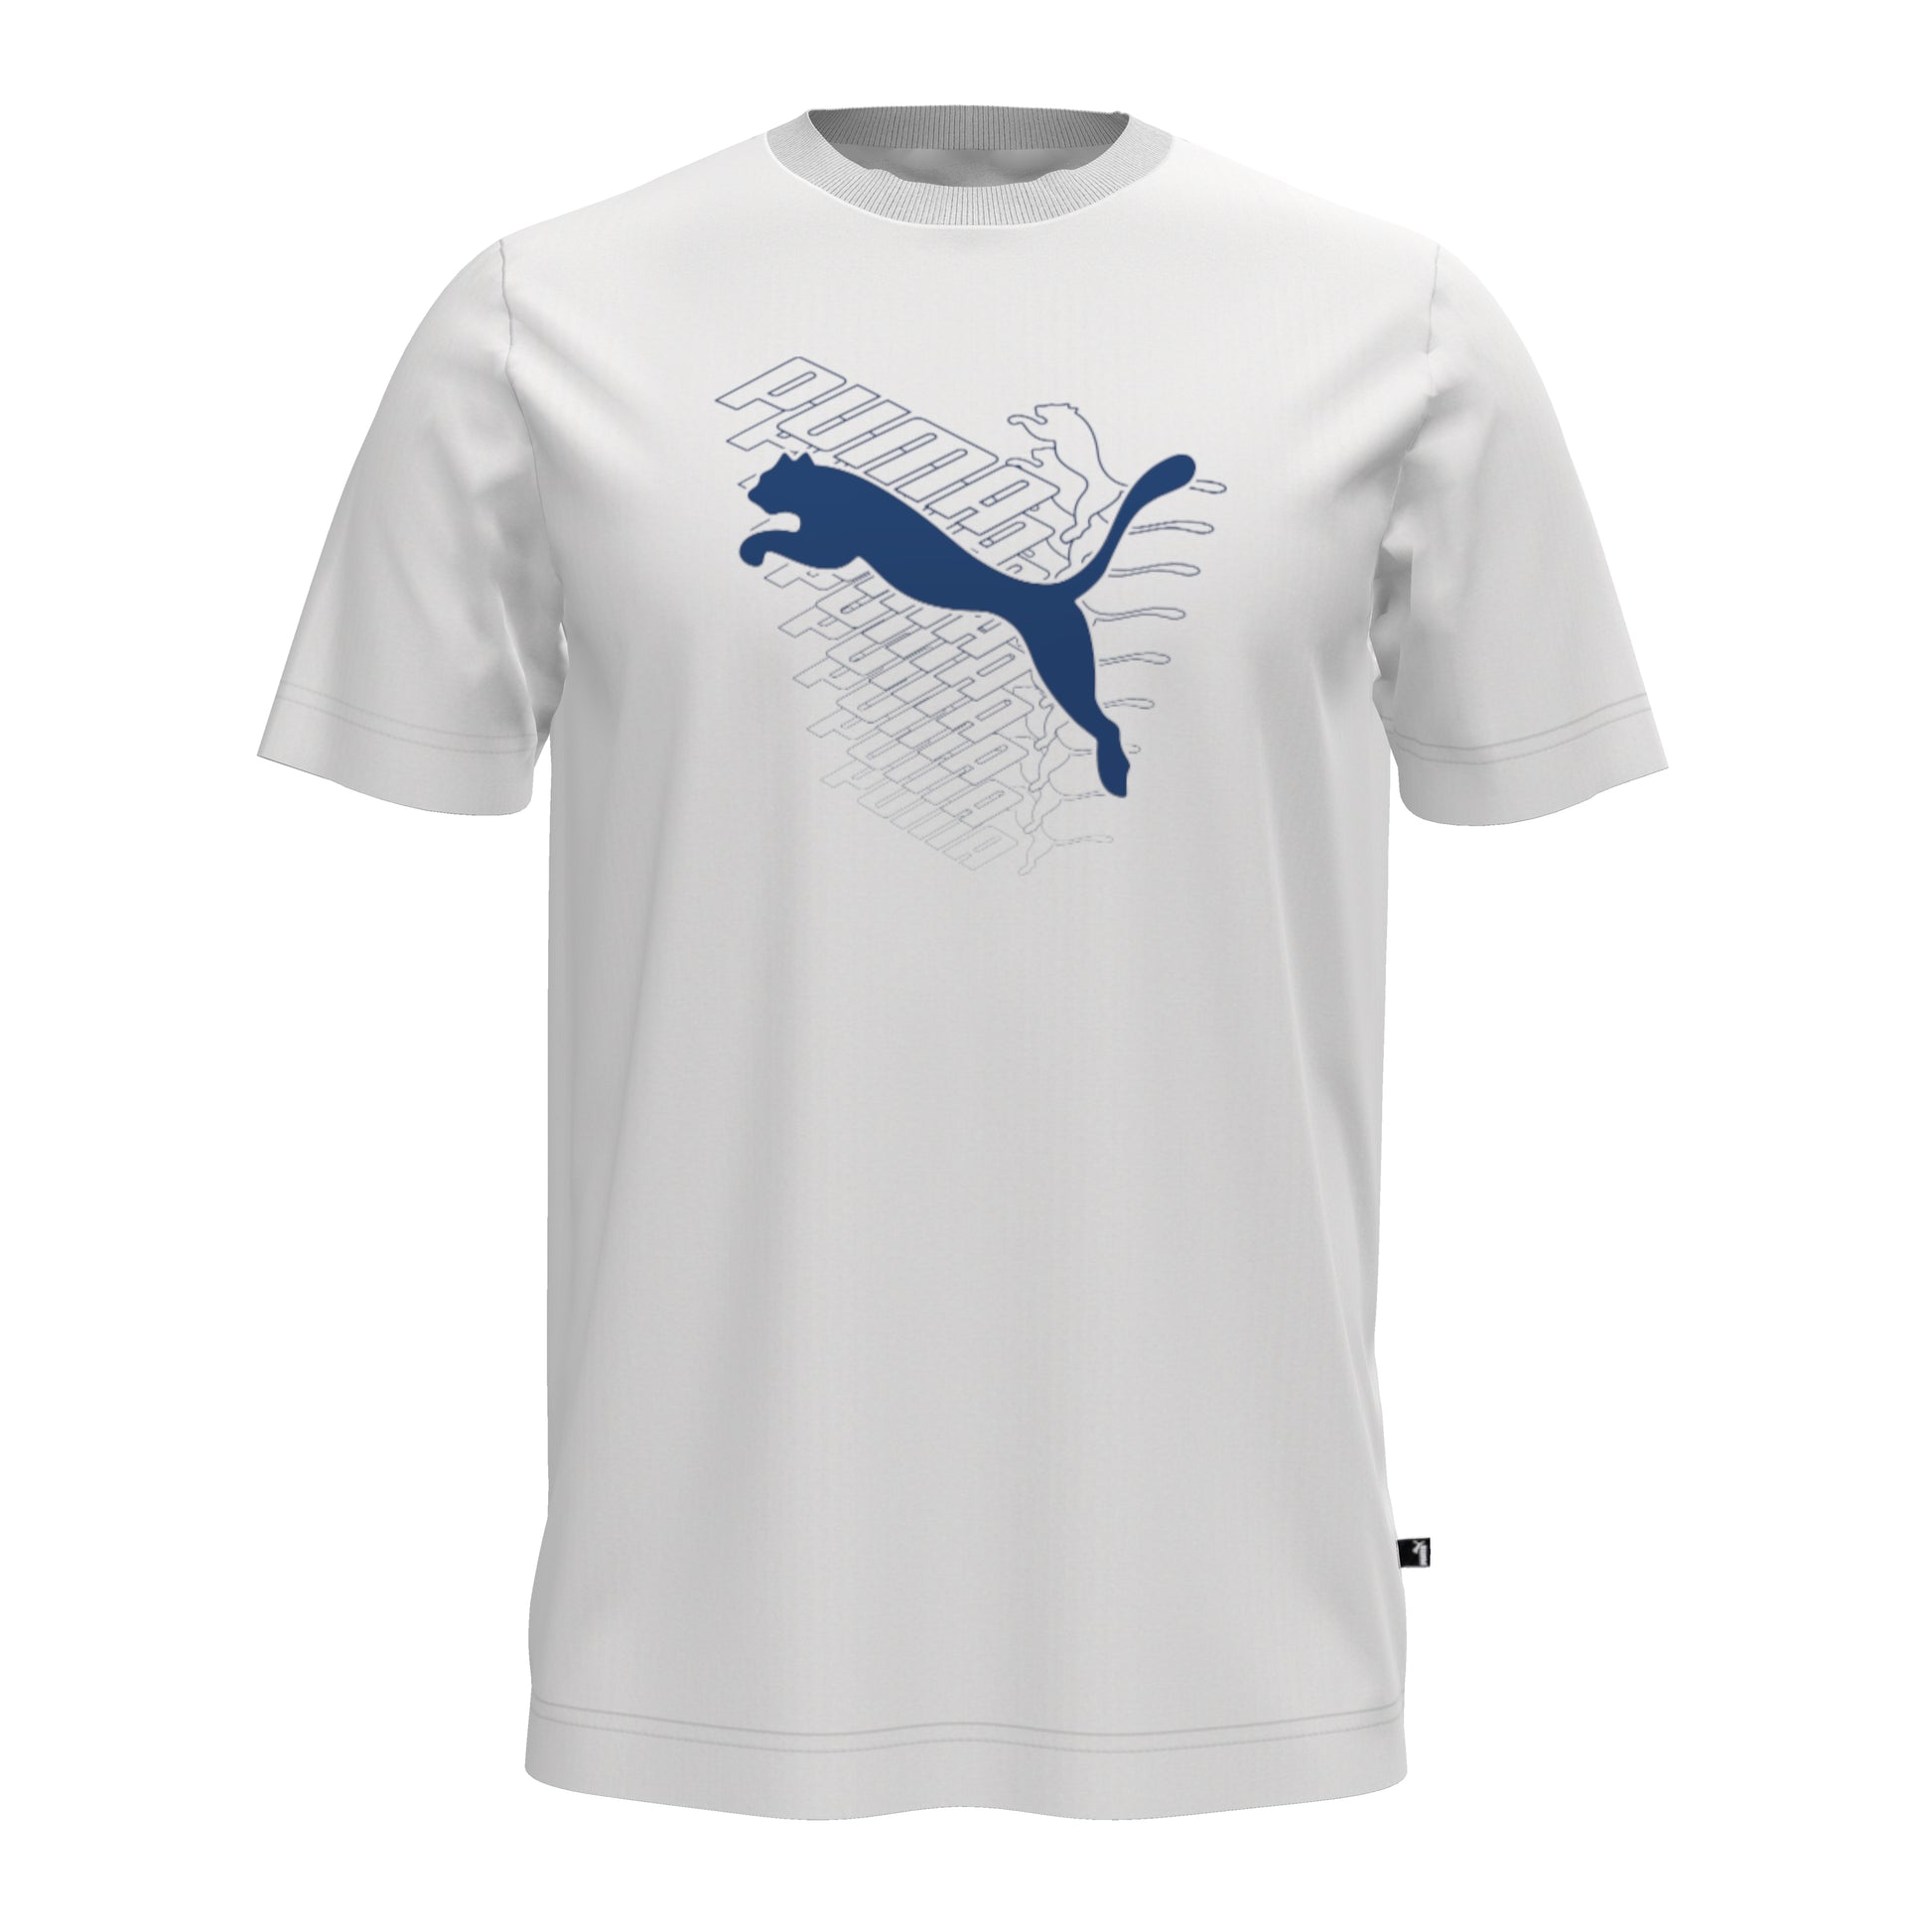 Puma Men's Graphics Cat Tee T-Shirt